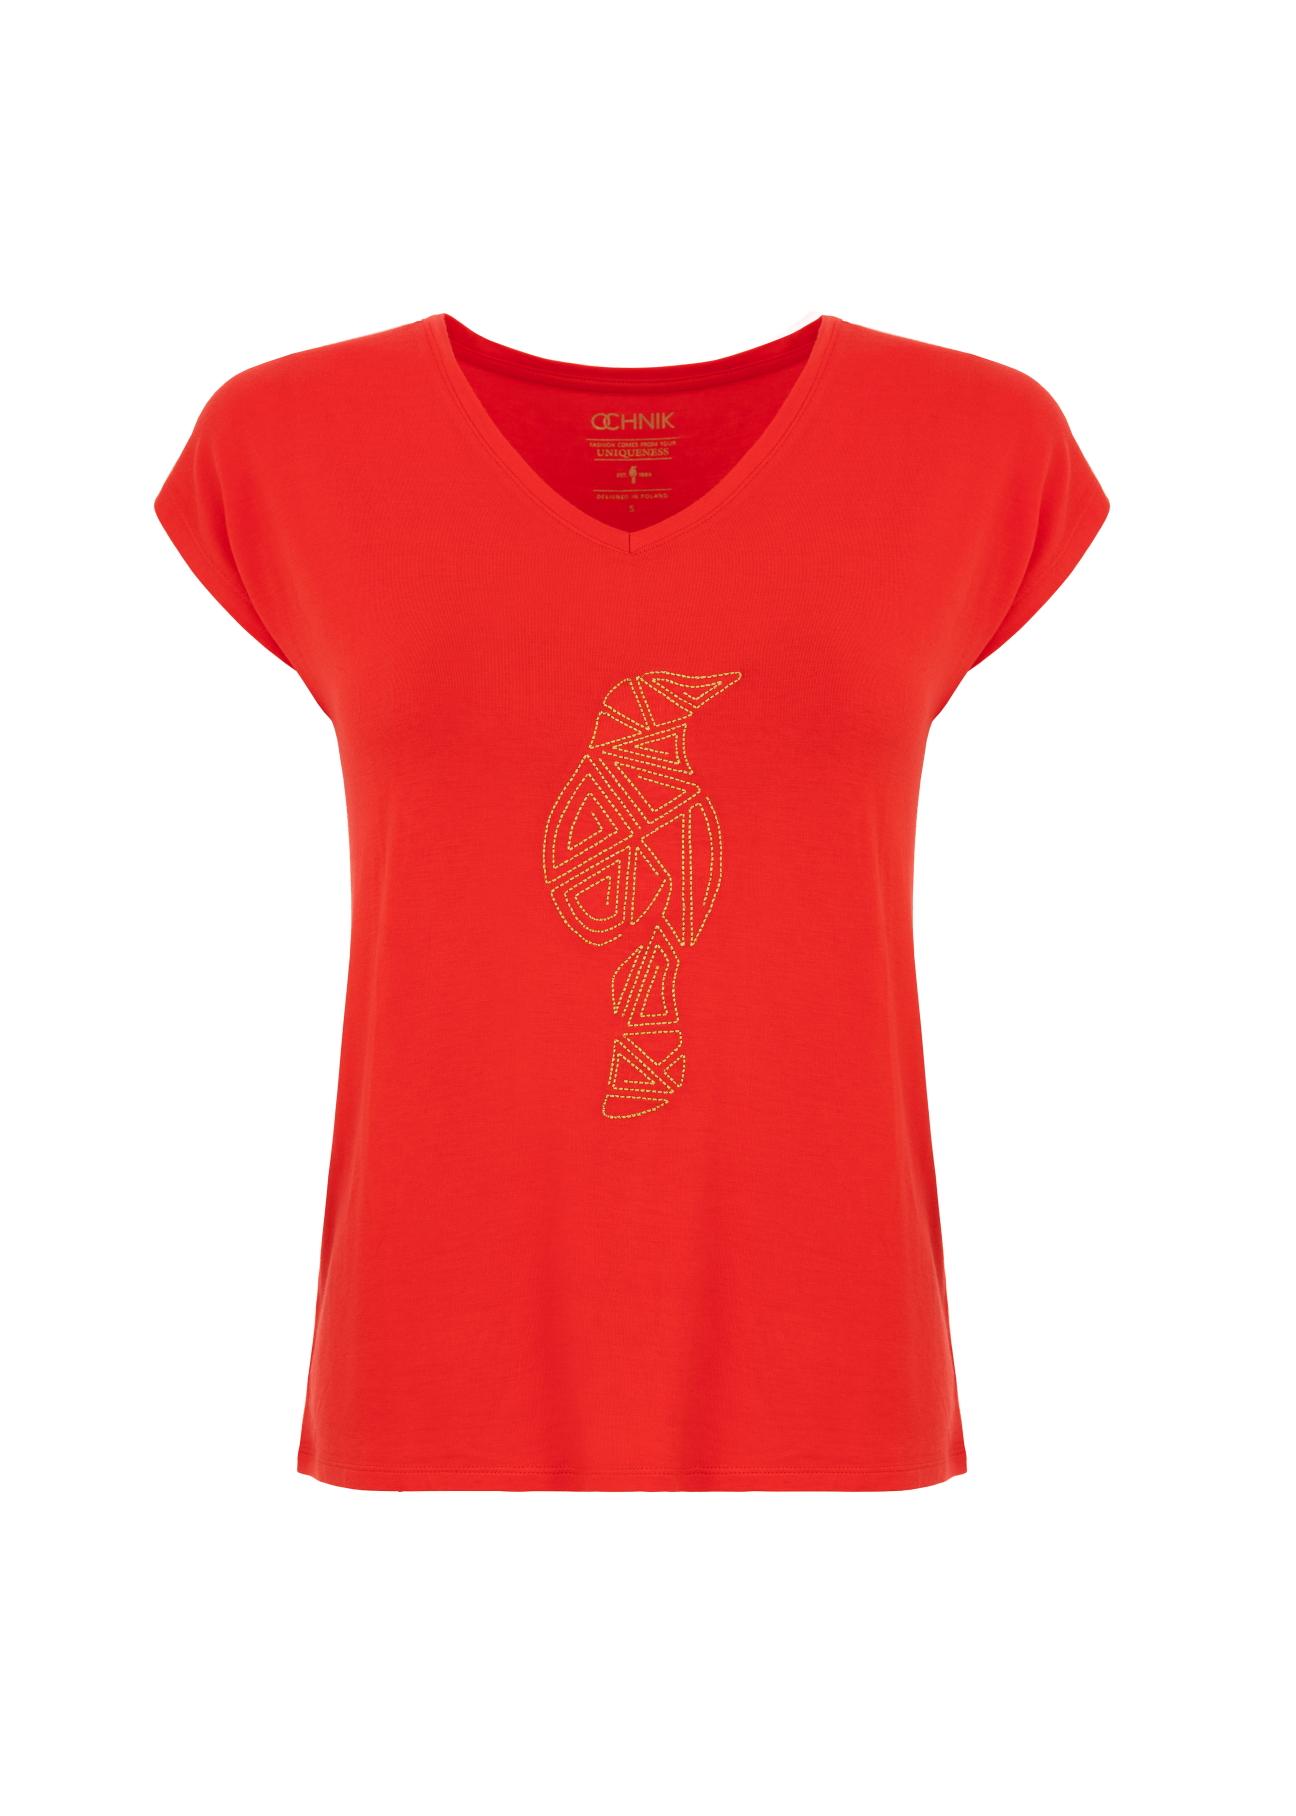 Czerwony T-shirt damski z aplikacją TSHDT-0066-42(W21)